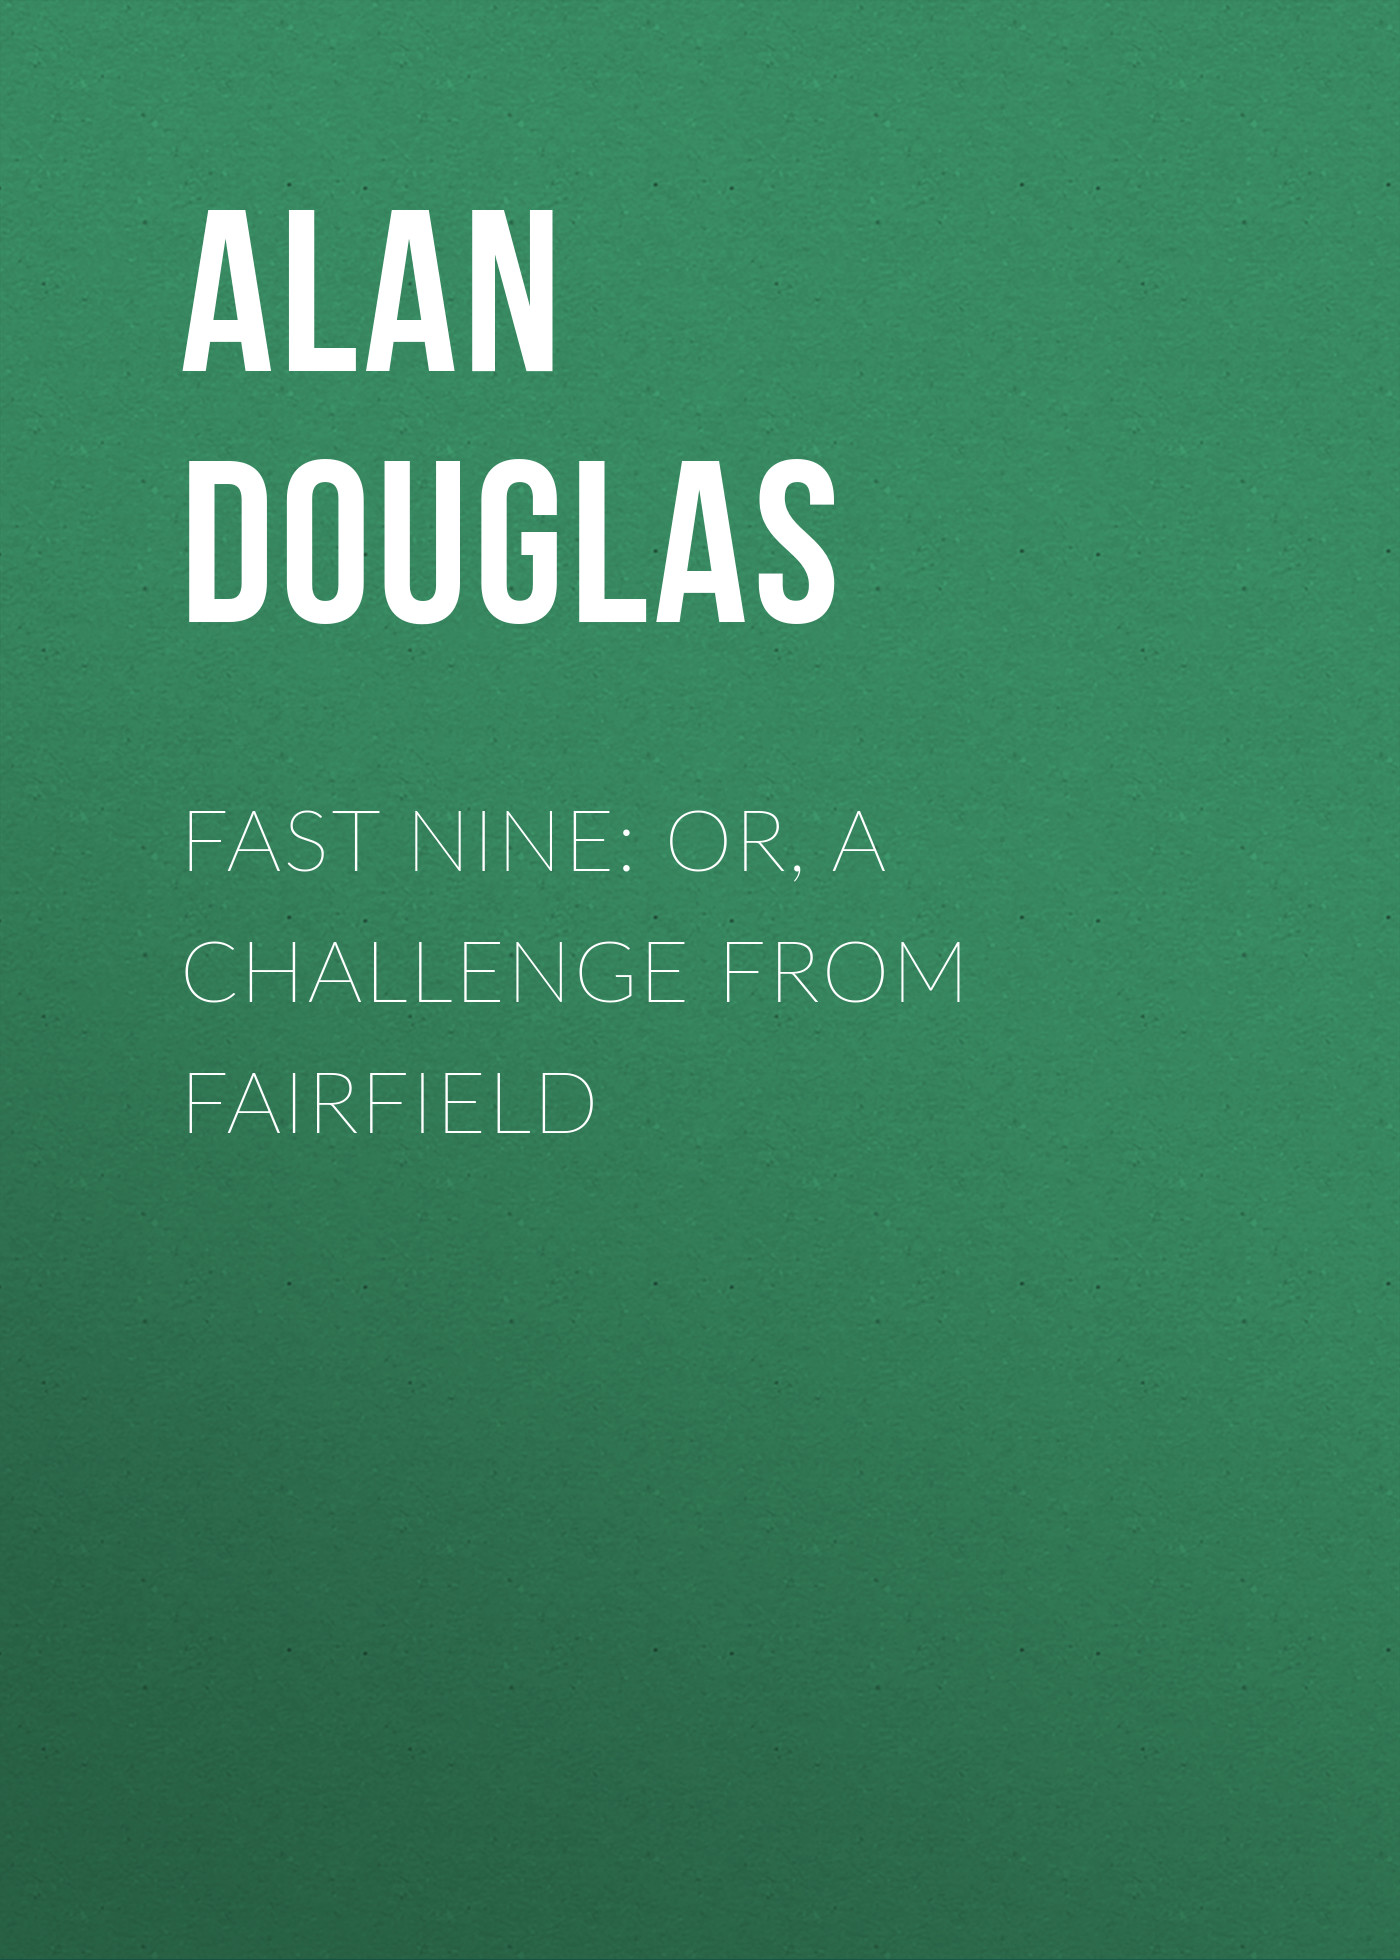 Книга Fast Nine: or, A Challenge from Fairfield из серии , созданная Alan Douglas, может относится к жанру Зарубежная классика, Зарубежные детские книги, Иностранные языки. Стоимость электронной книги Fast Nine: or, A Challenge from Fairfield с идентификатором 23171787 составляет 5.99 руб.